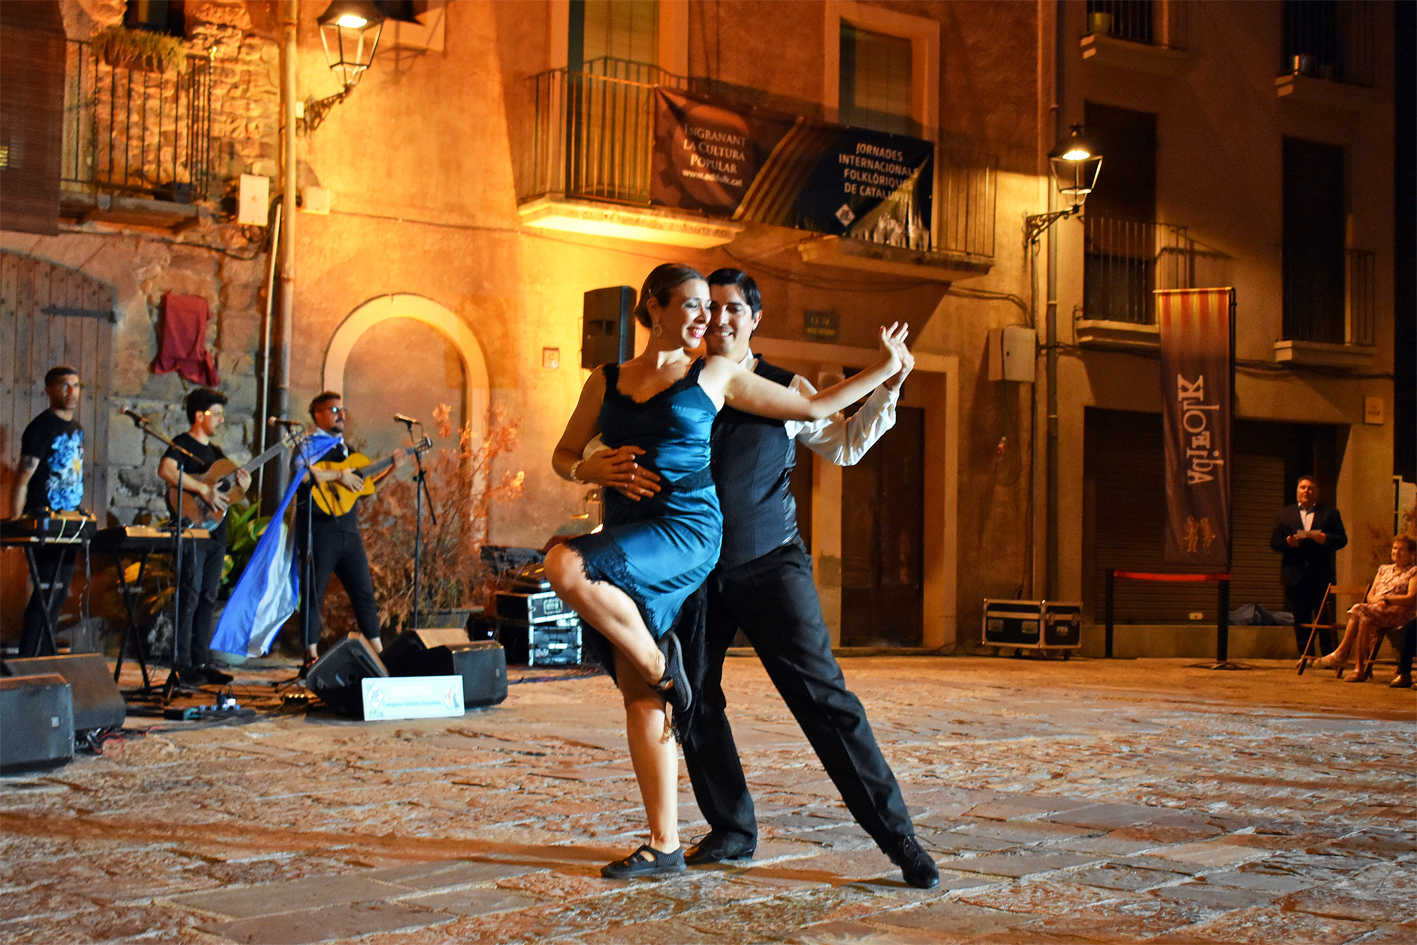 Actuació de la Compañía Folklórica Danzantes i el grup musical Terranova (Argentina) a la plaça Major del Poble Vell, dins de la 51a edició de les Jornades Internacionals Folklòriques i del programa de l'Onze de Setembre a Súria.